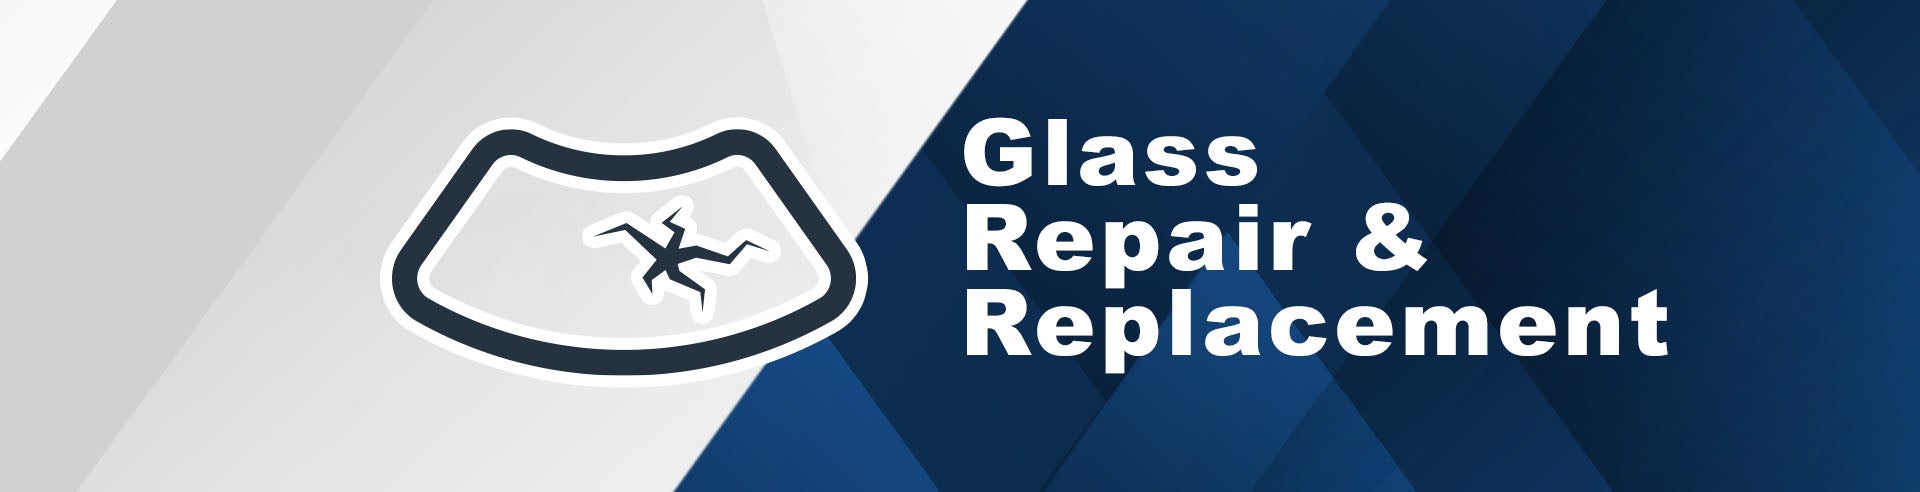 Glass Repair & Replacement